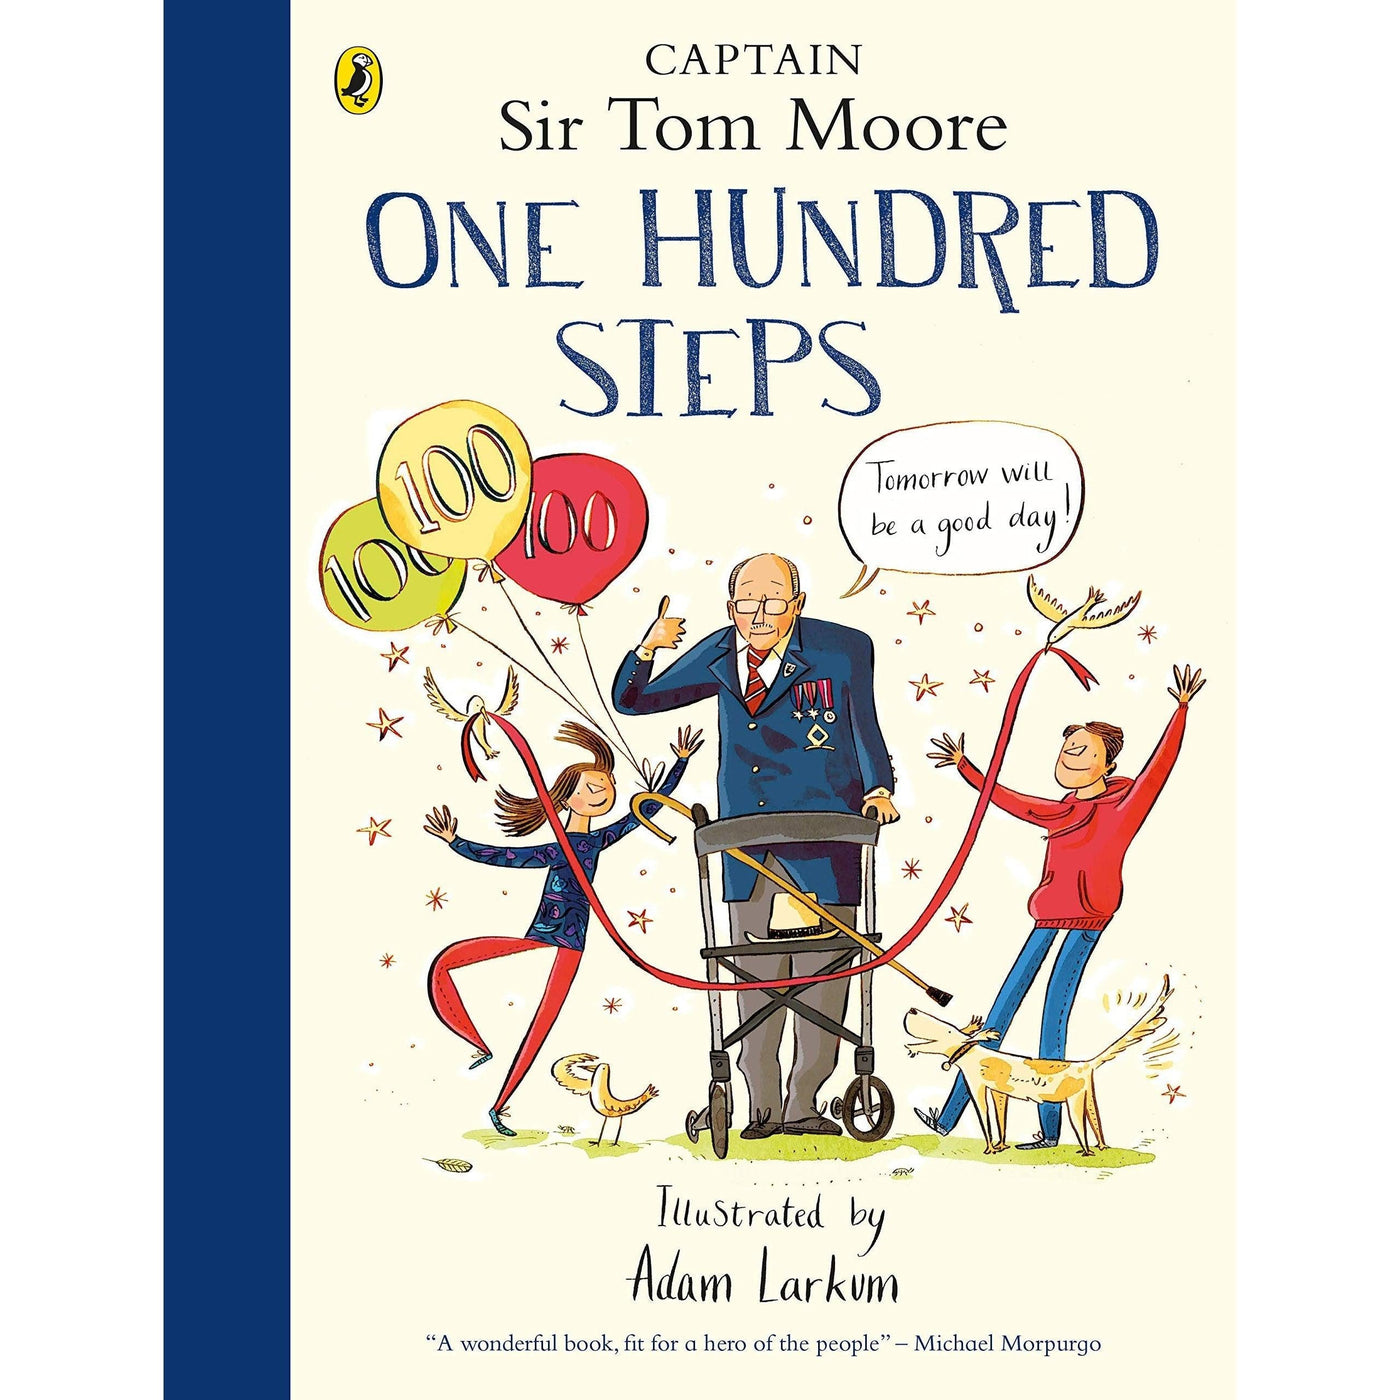 One Hundred Steps: The Story Of Captain Sir Tom Moore - Captain Tom Moore & Adam Larkum